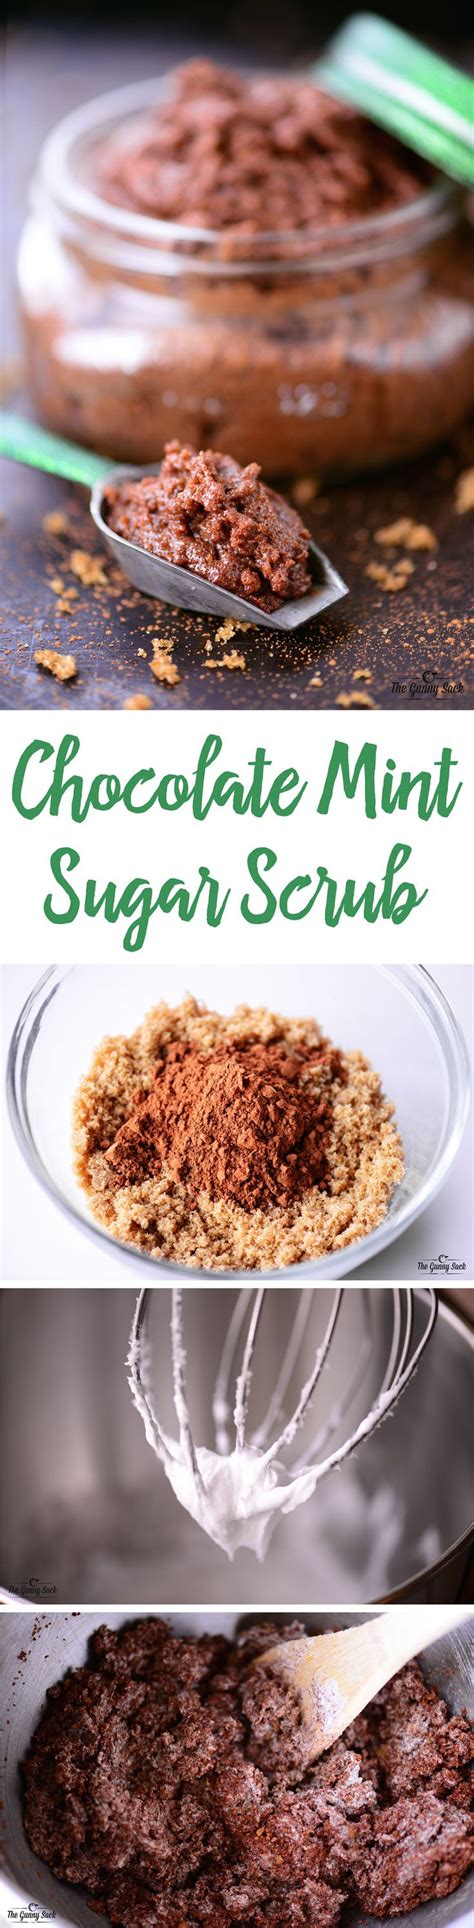 Chocolate Mint Sugar Scrub Recipe